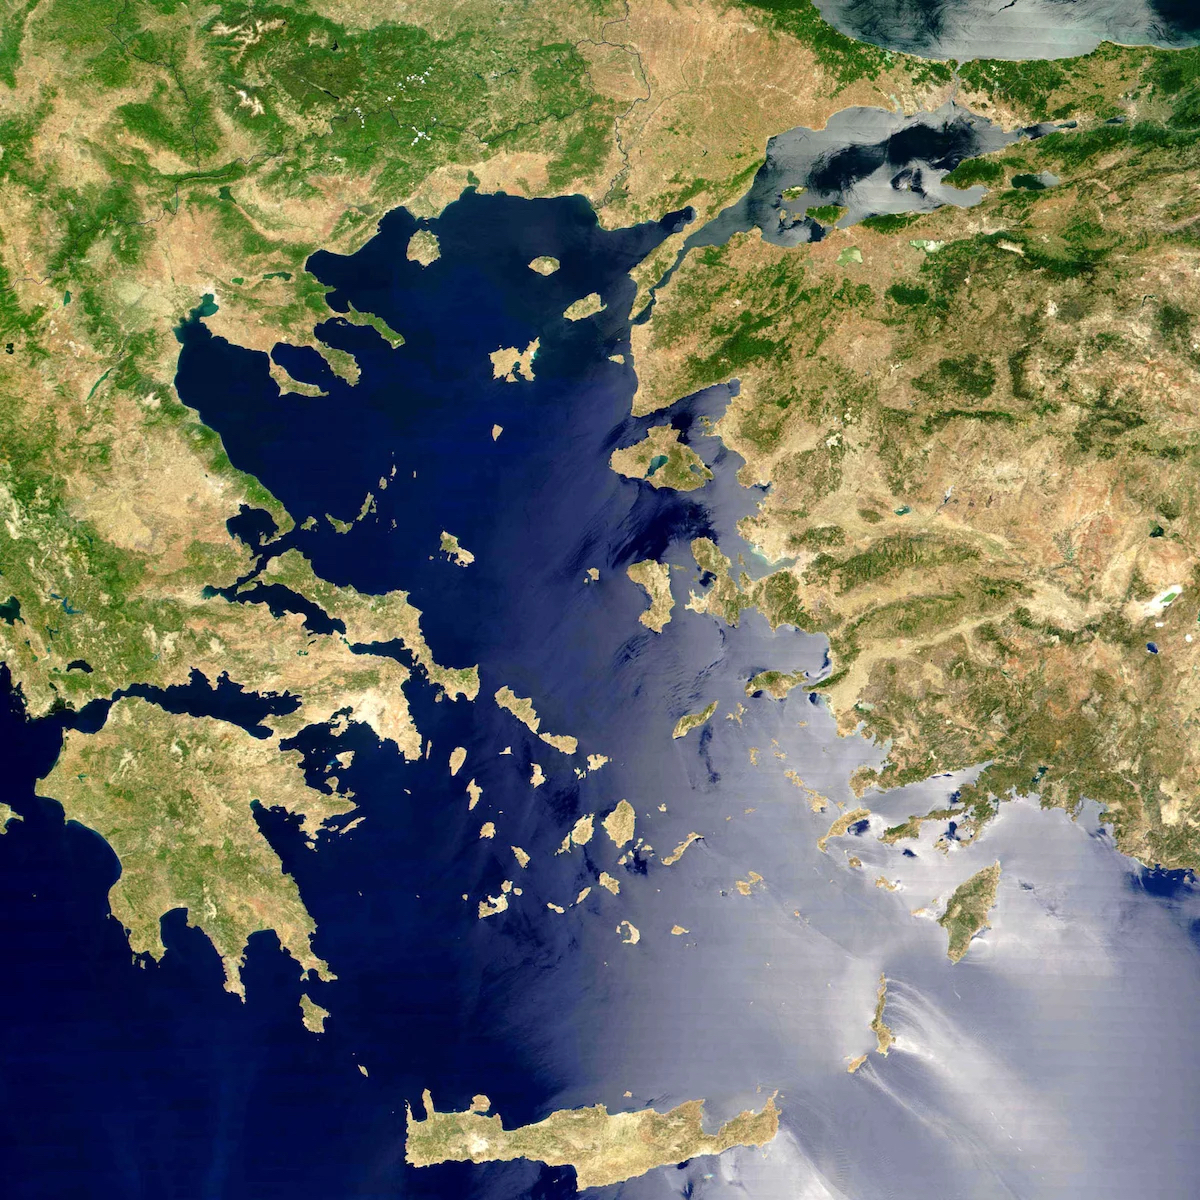 Τούρκος πρέσβης επί τιμή «αδειάζει» τον Ερντογάν: «Η Ελλάδα έχει δίκιο για τα νησιά»